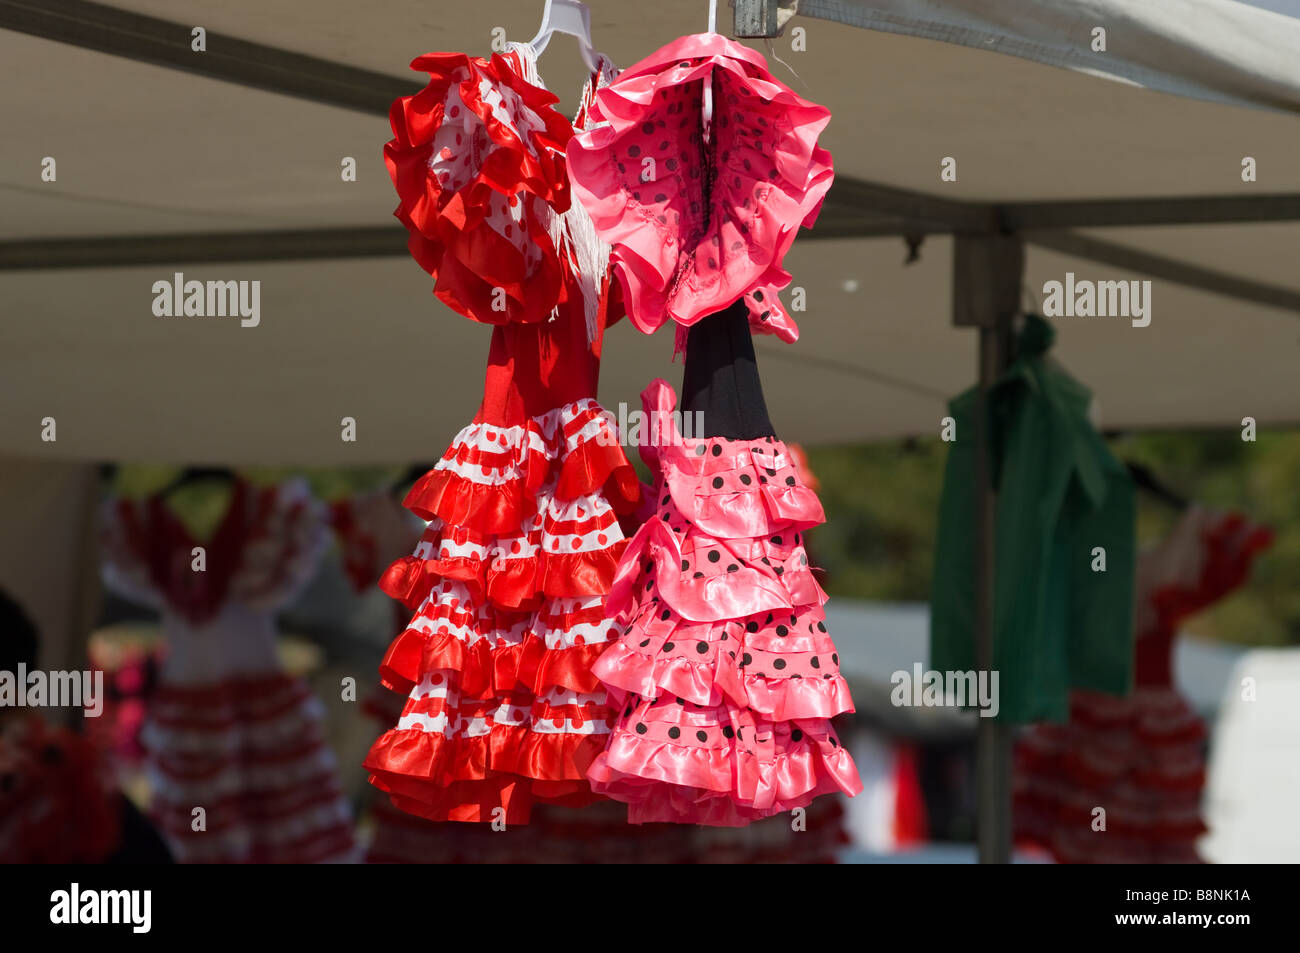 Spanische Kleider Trachten Kleidung auf ein Markt Stall La Marina Spanien Stockfoto